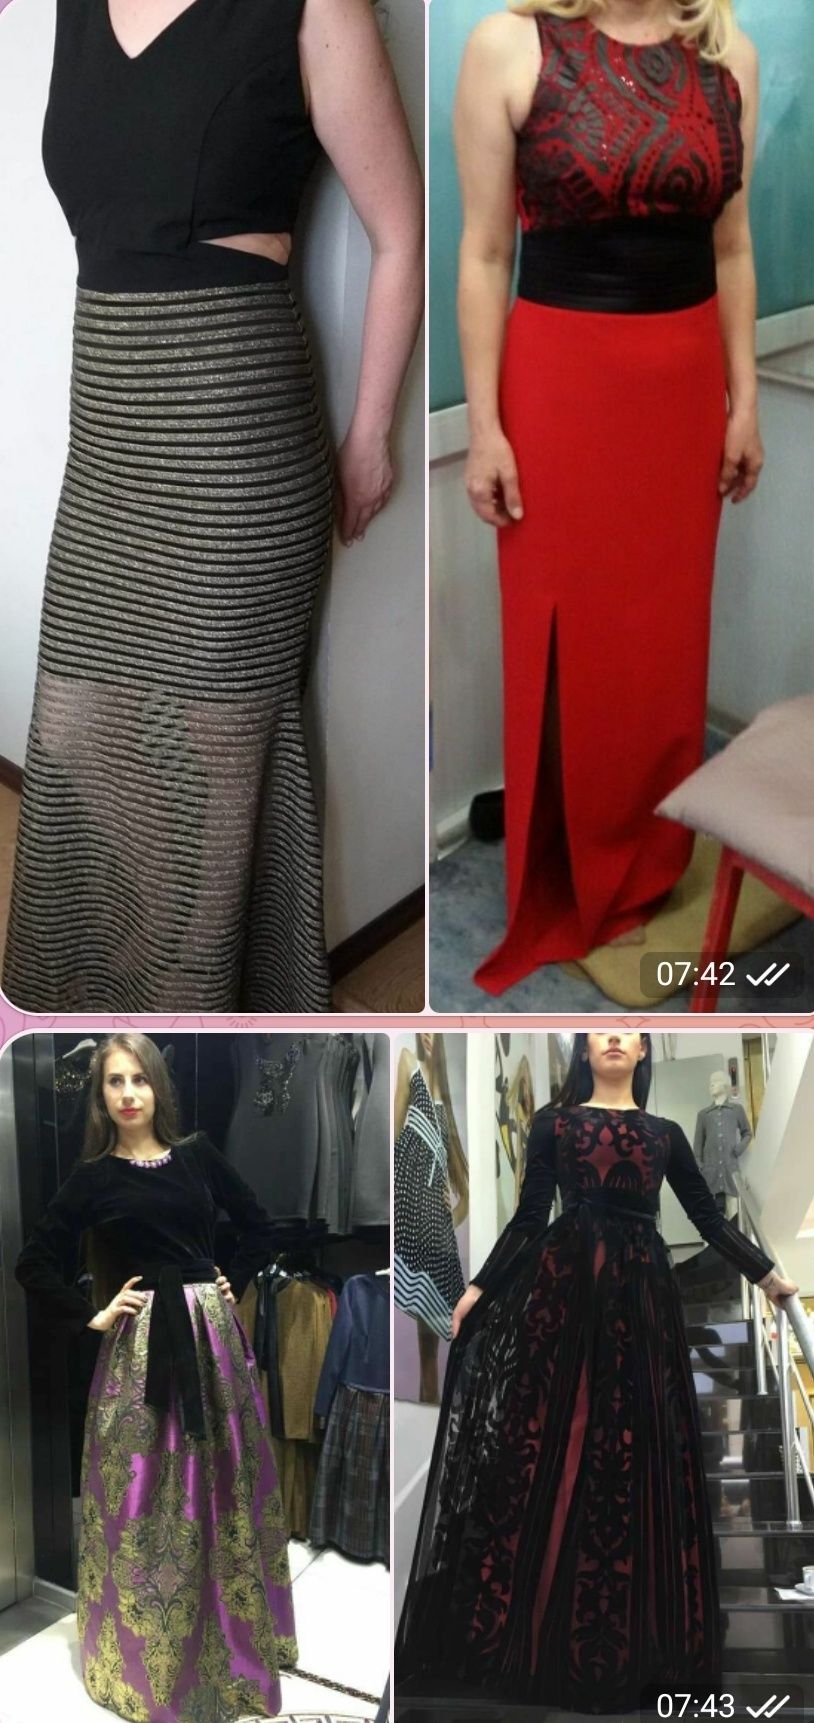 Продаются новые женские платья 
Производство Турция 
Высокое качество